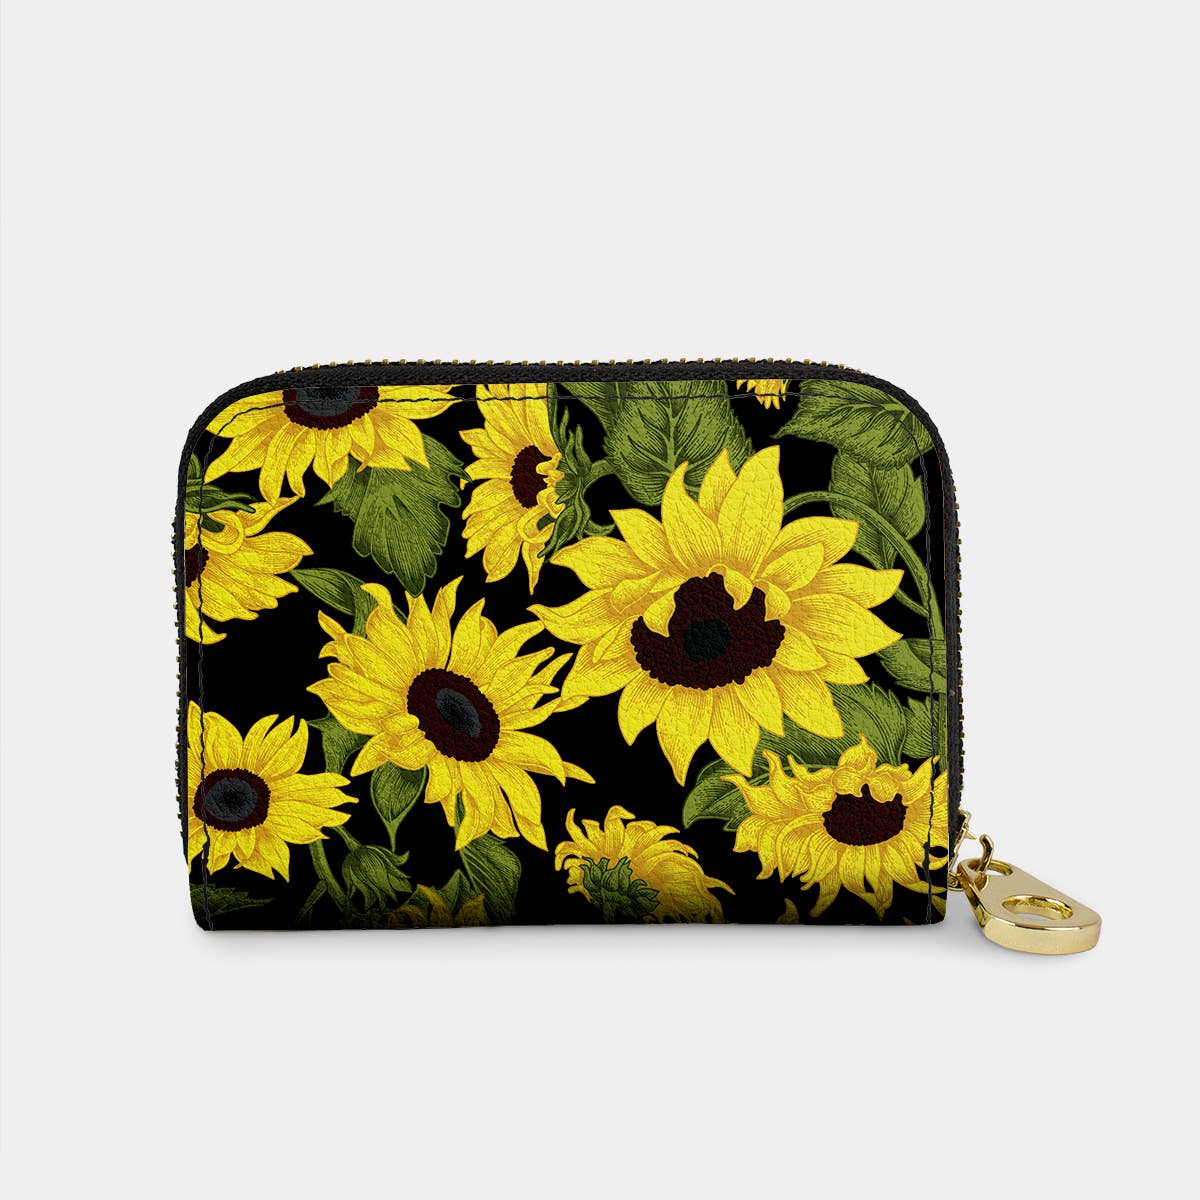 Sunflower Pattern Canvas Coin Purse Zipper Cash Key Holder Bag Wallet 